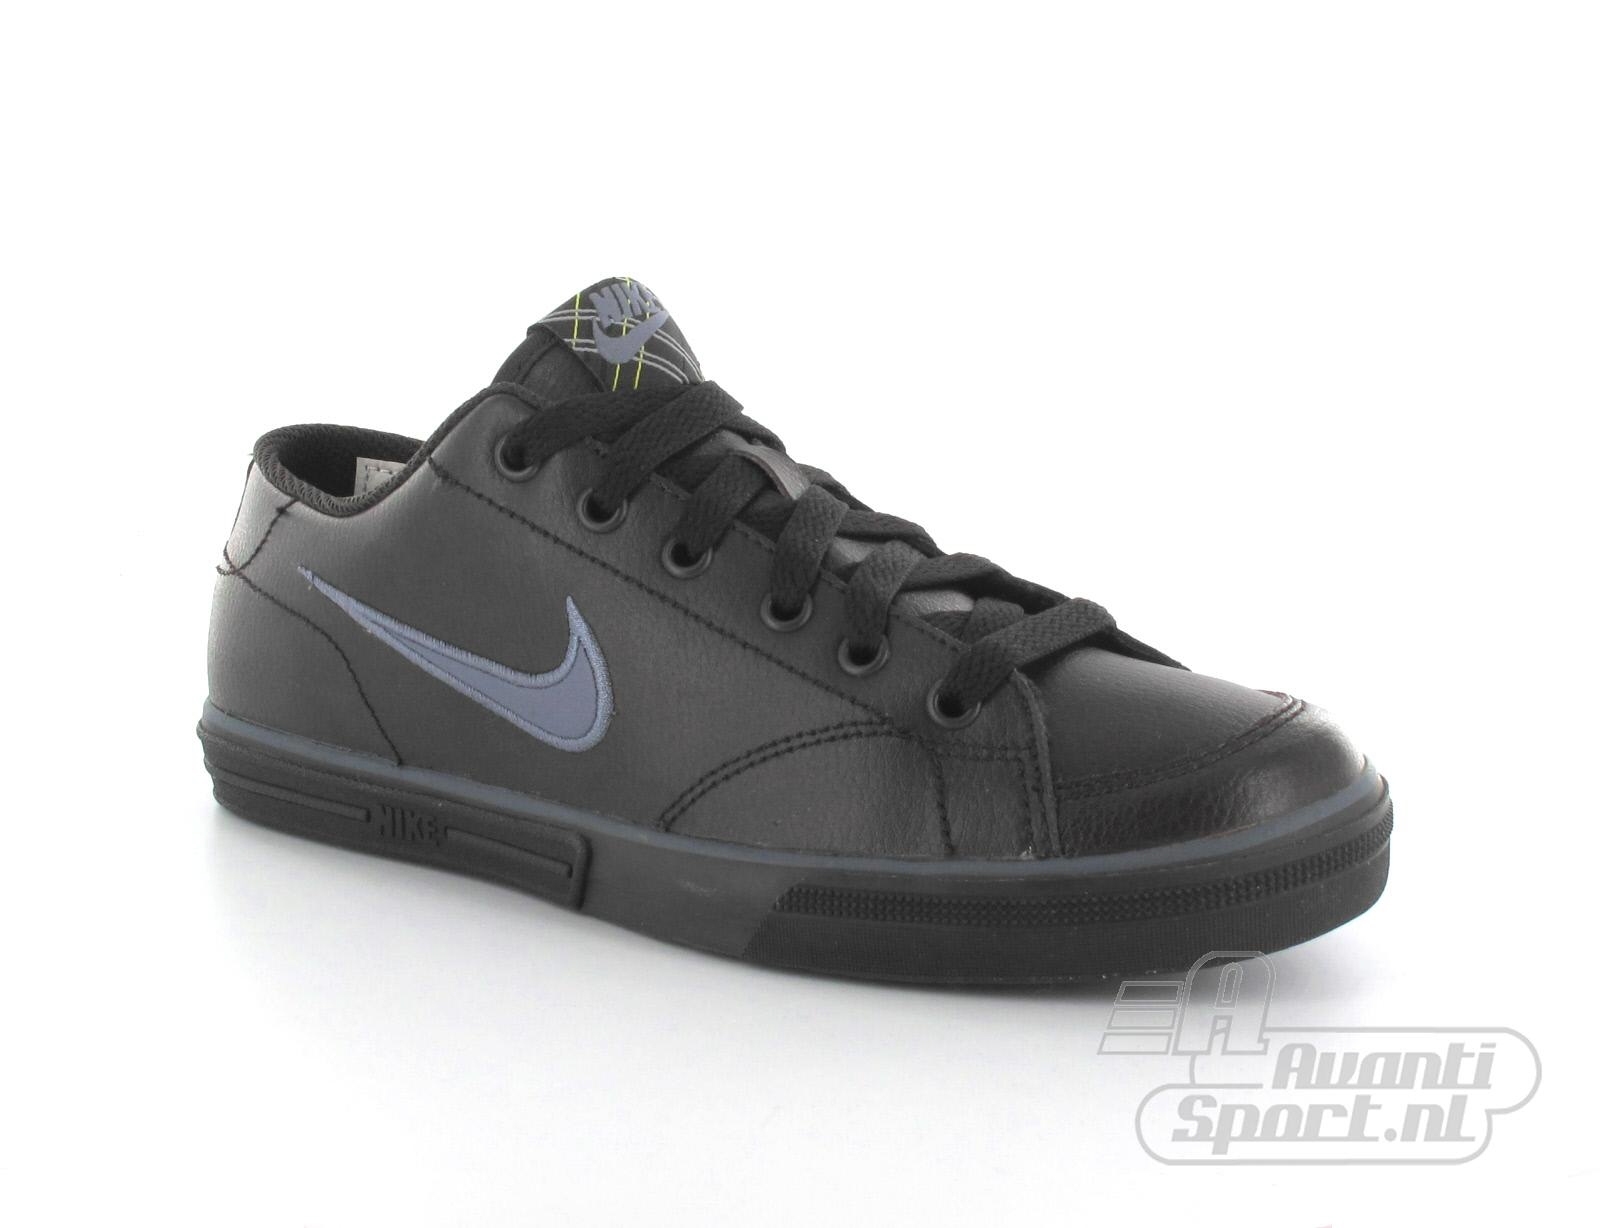 Avantisport - Nike - Capri Leather (Gs) - Schoen